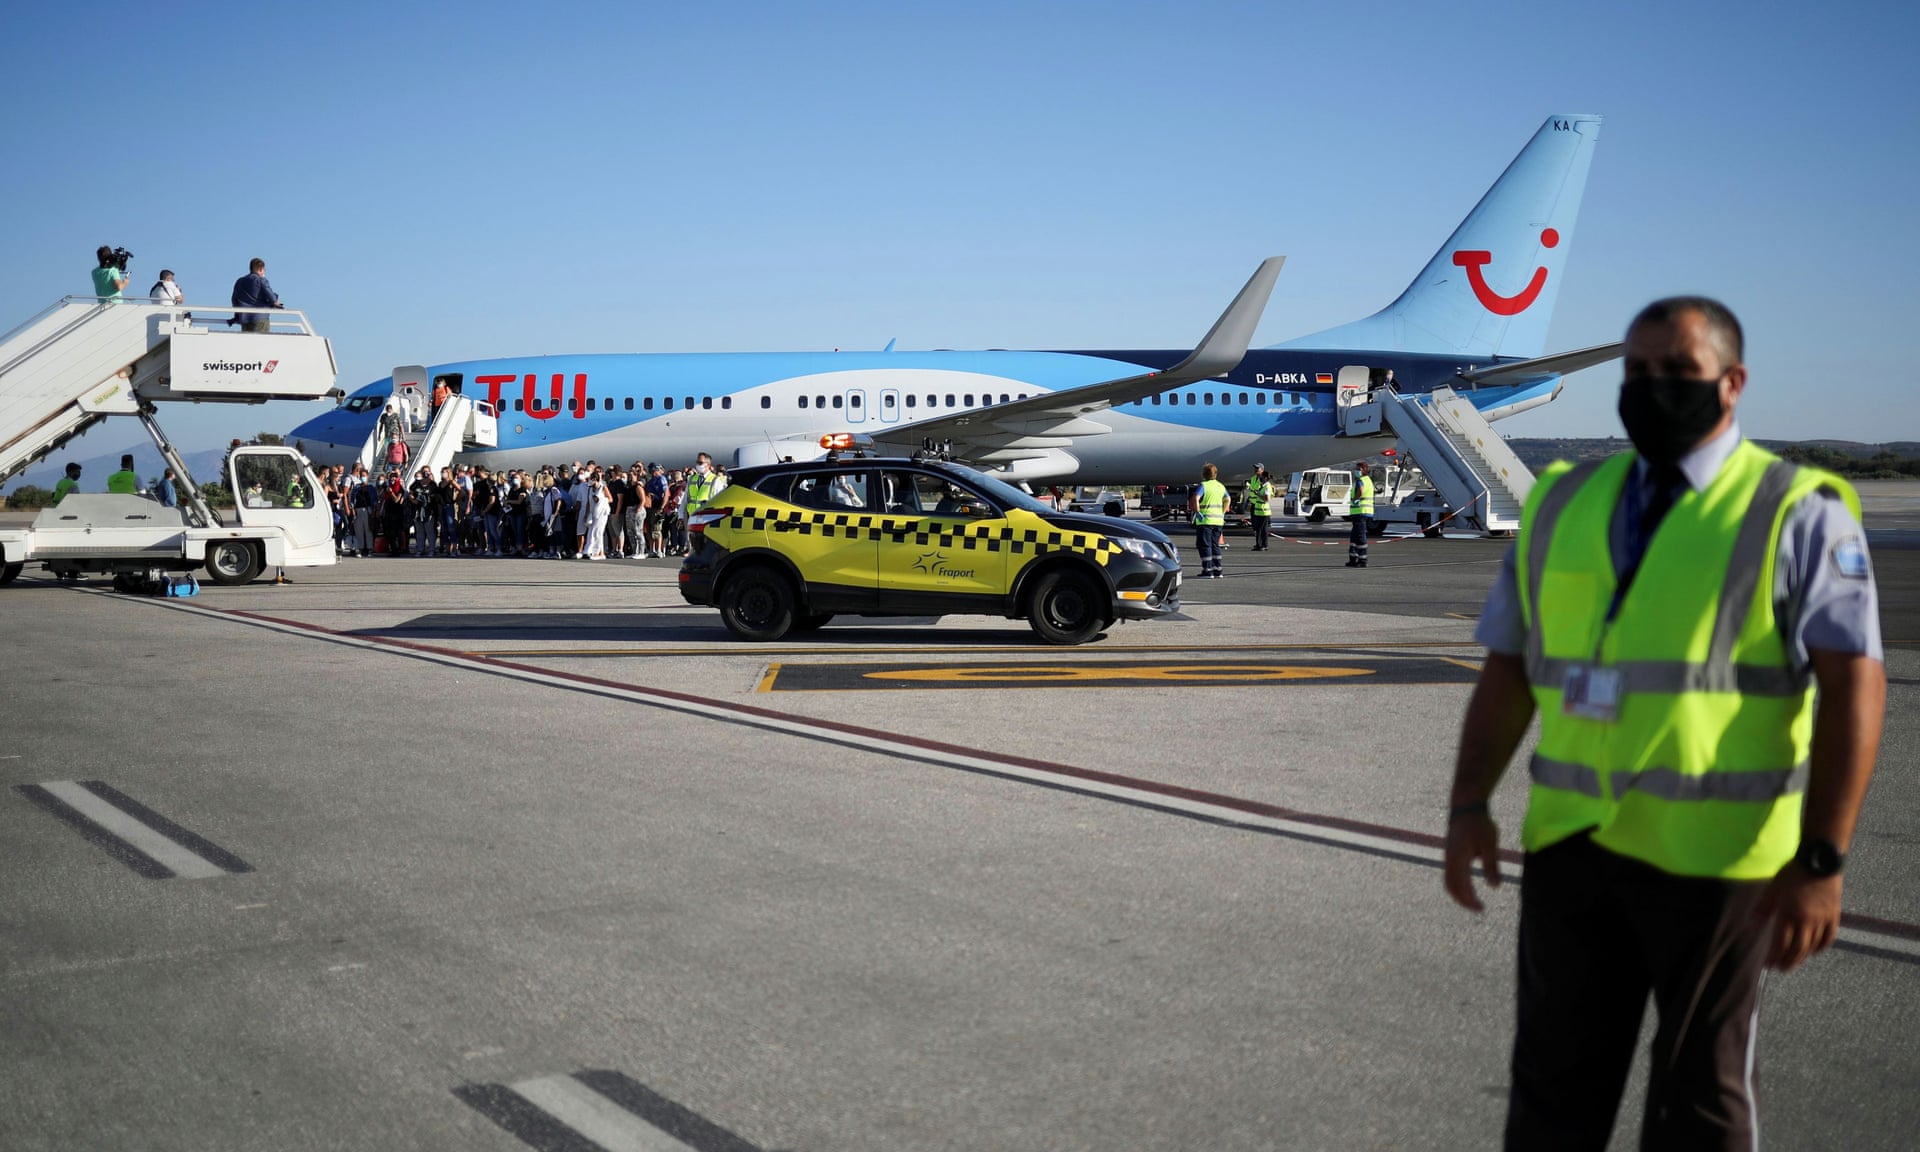 'Covidiots' criticised on Tui quarantine flight - Coronavirus: Experiencia en Francia y Suiza ✈️ Foro General de Viajes